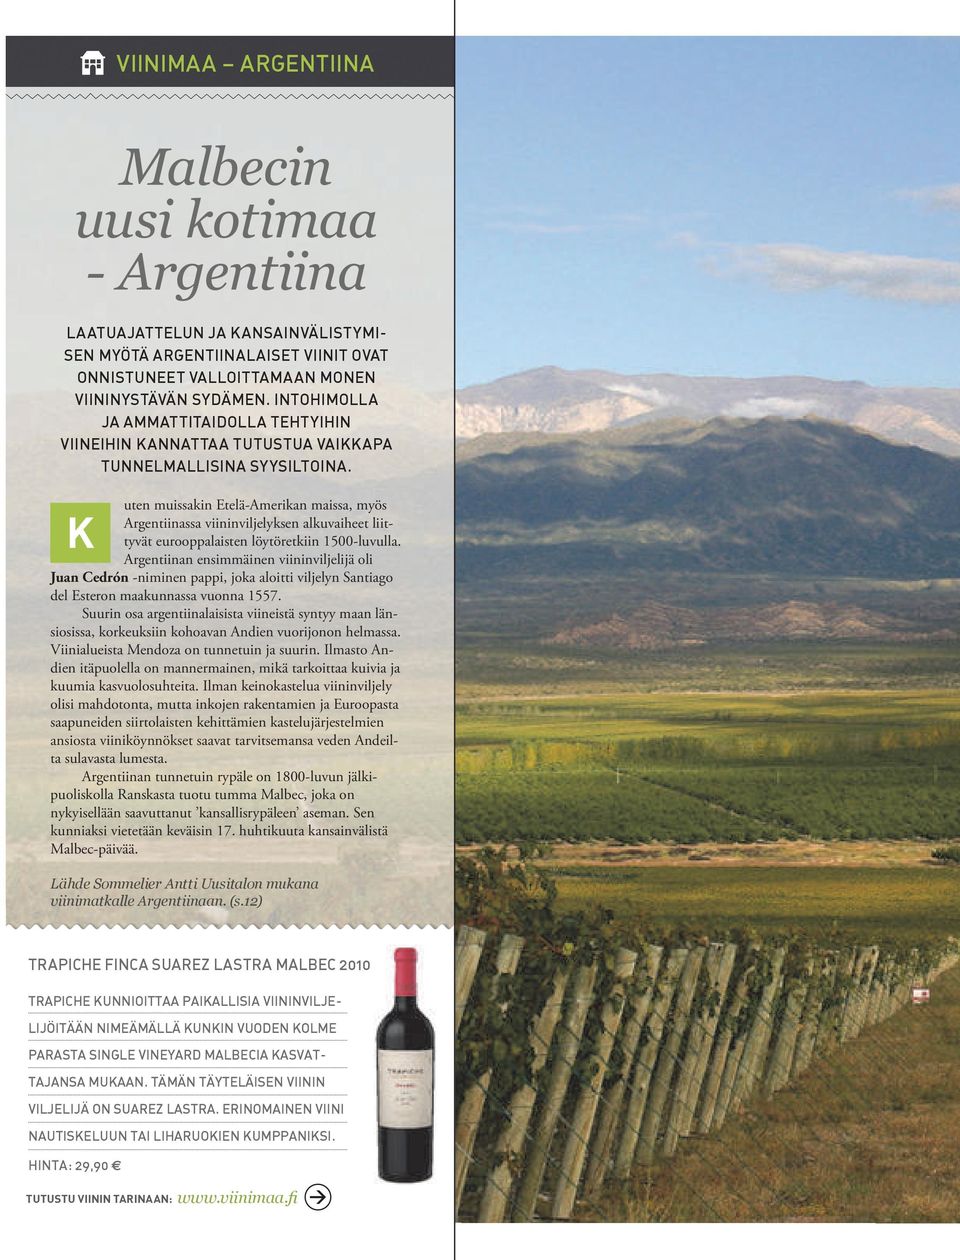 uten muissakin Etelä-Amerikan maissa, myös Argentiinassa viininviljelyksen alkuvaiheet liittyvät eurooppalaisten löytöretkiin 1500-luvulla.